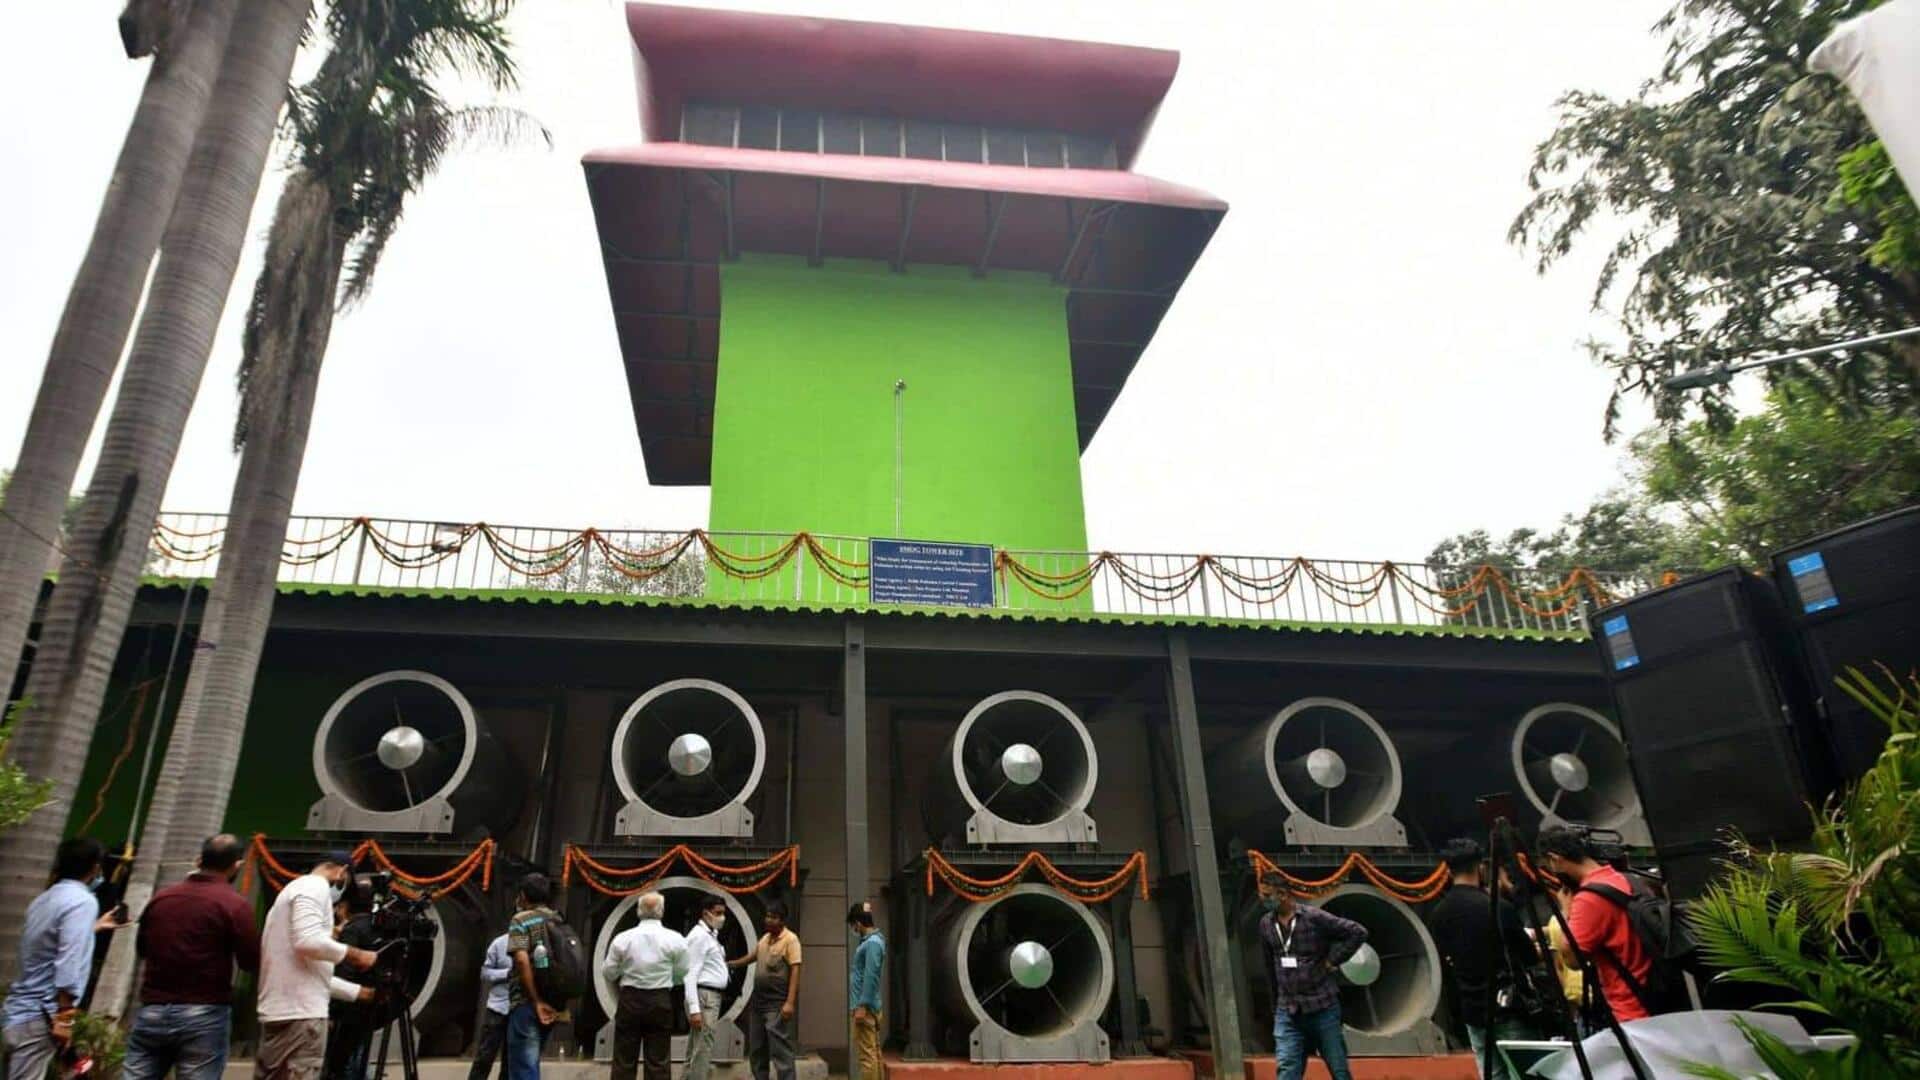 दिल्ली वायु प्रदूषण के धुंध में डूबी, 23 करोड़ रुपये का स्मॉग टावर ताले में बंद